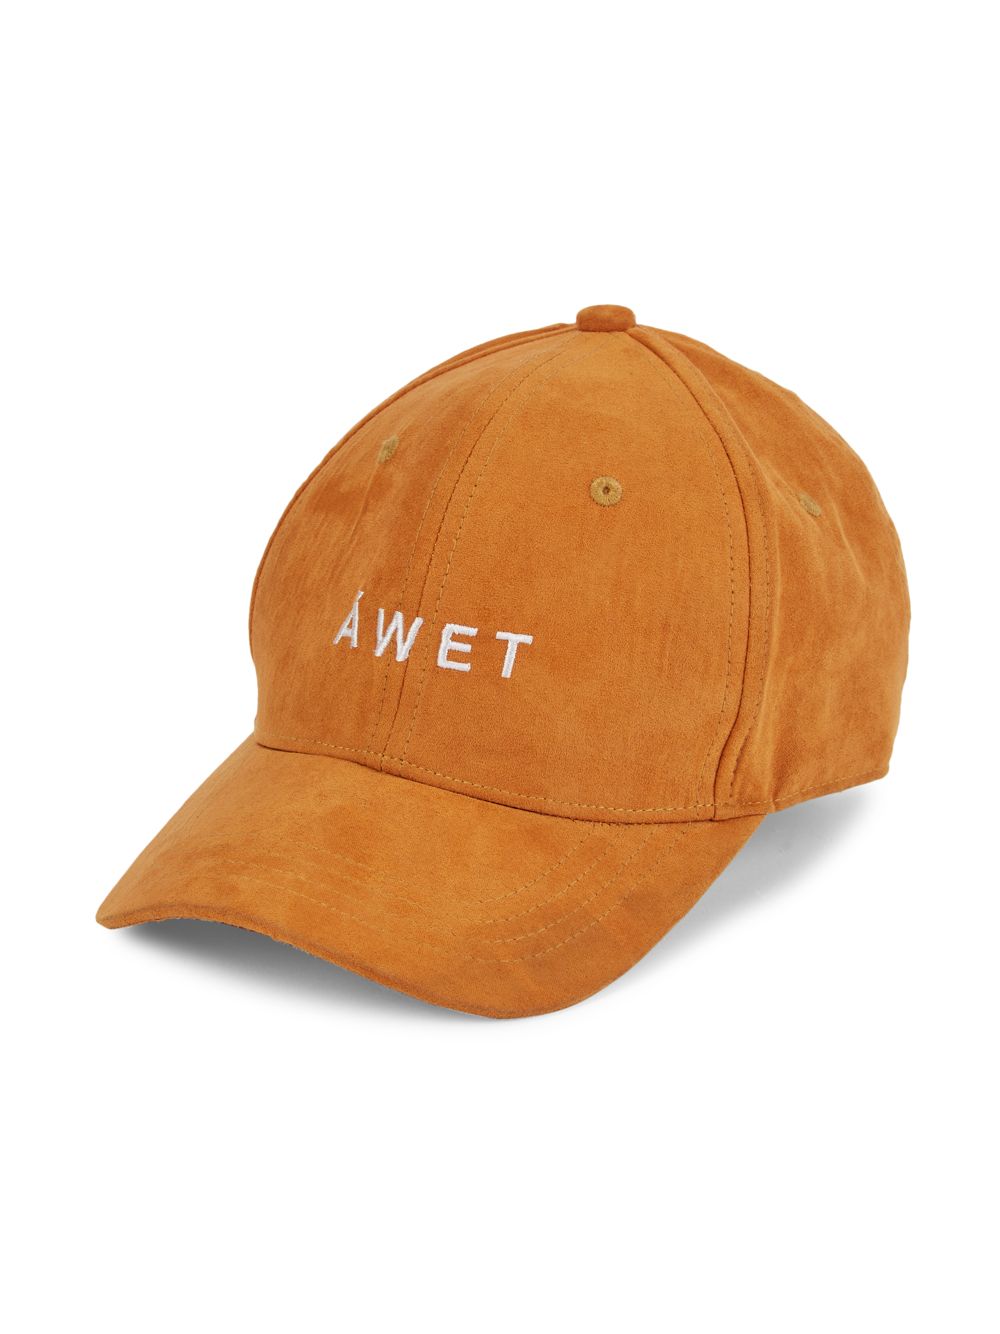 Замшевая кепка с логотипом Pascale Áwet, коричневый